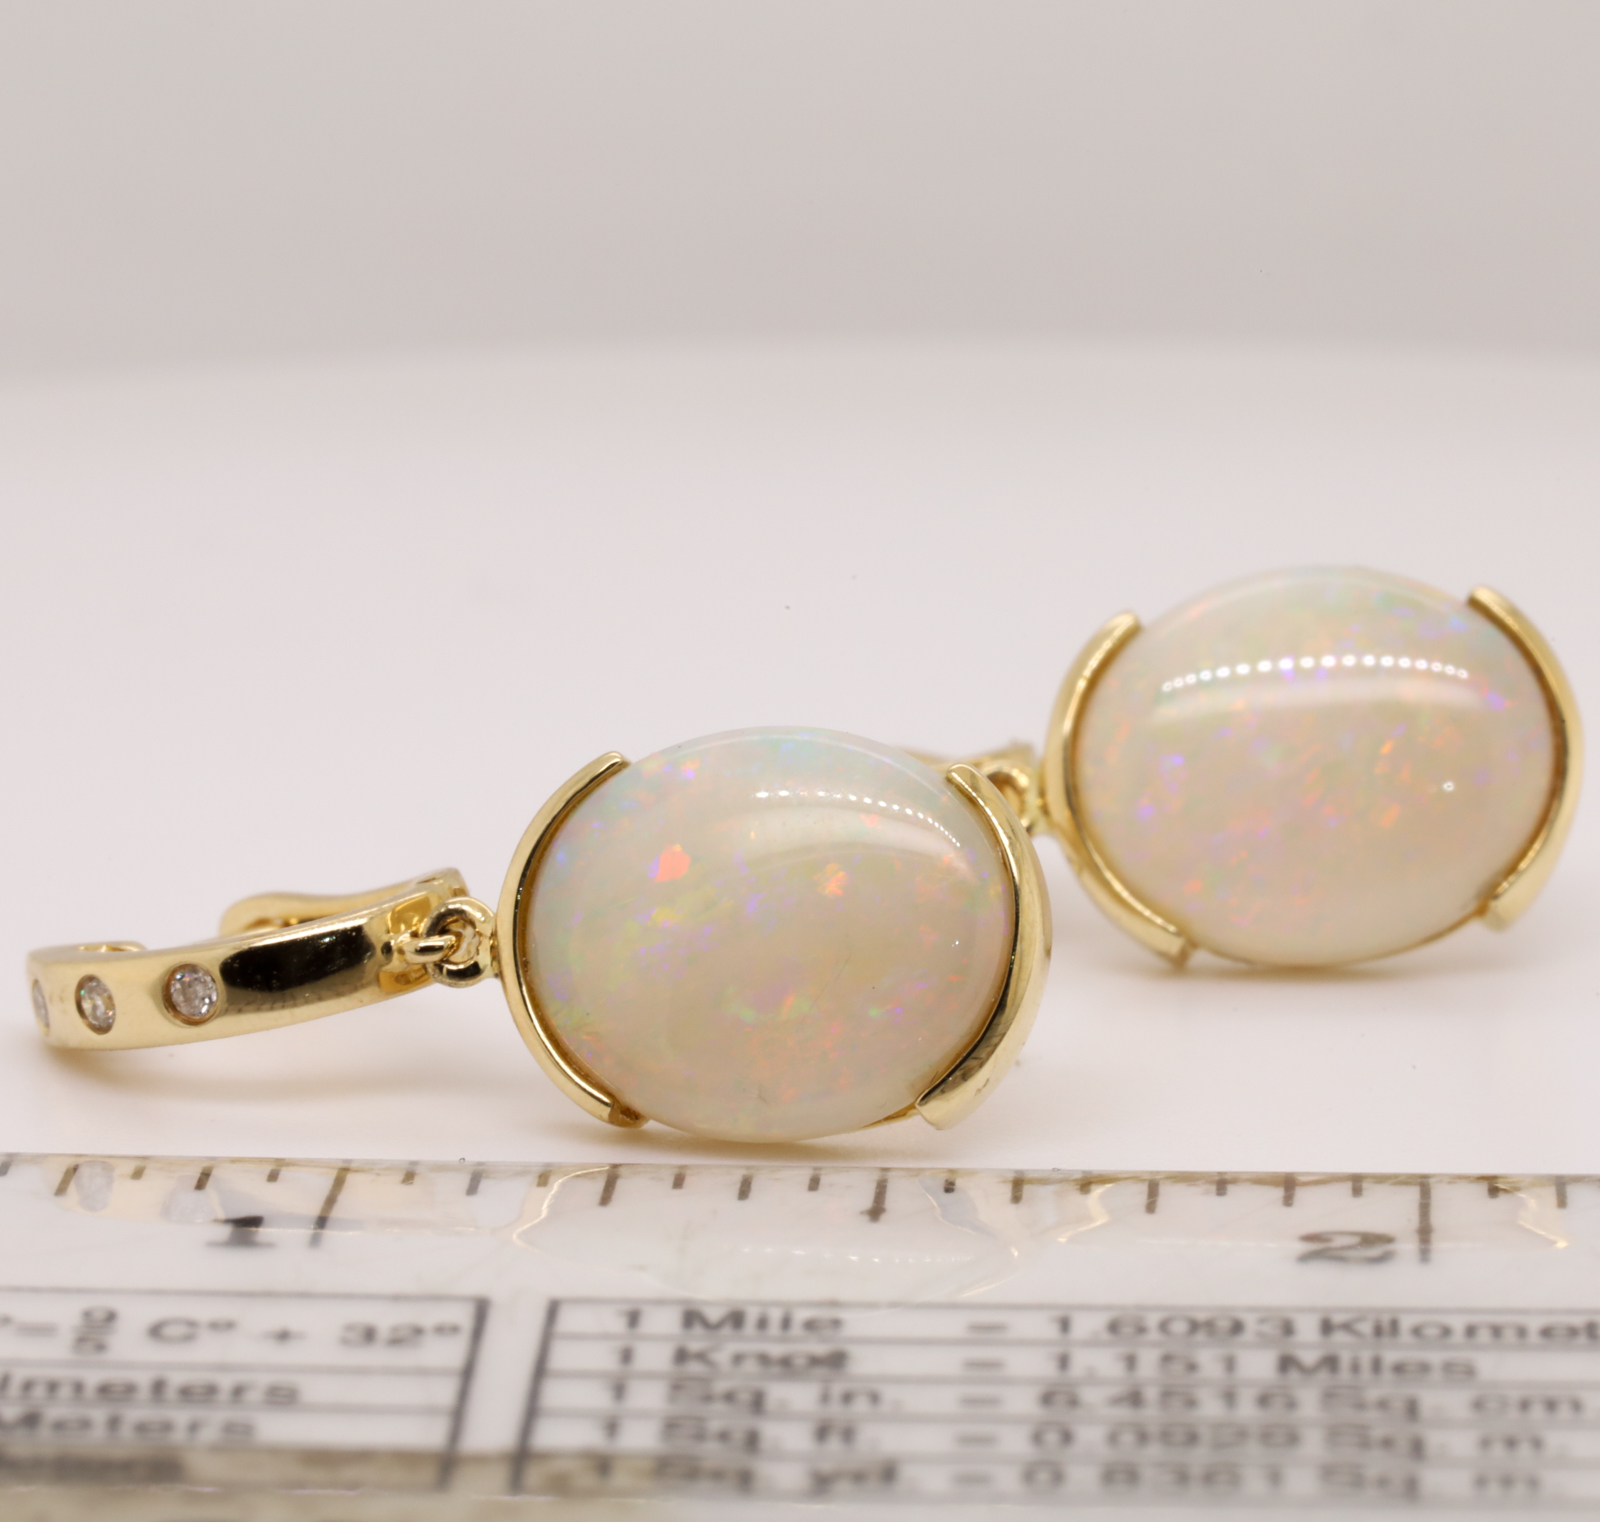 Blue Green Pink Yellow Gold Solid Australian Crystal Opal Diamond Drop Earrings